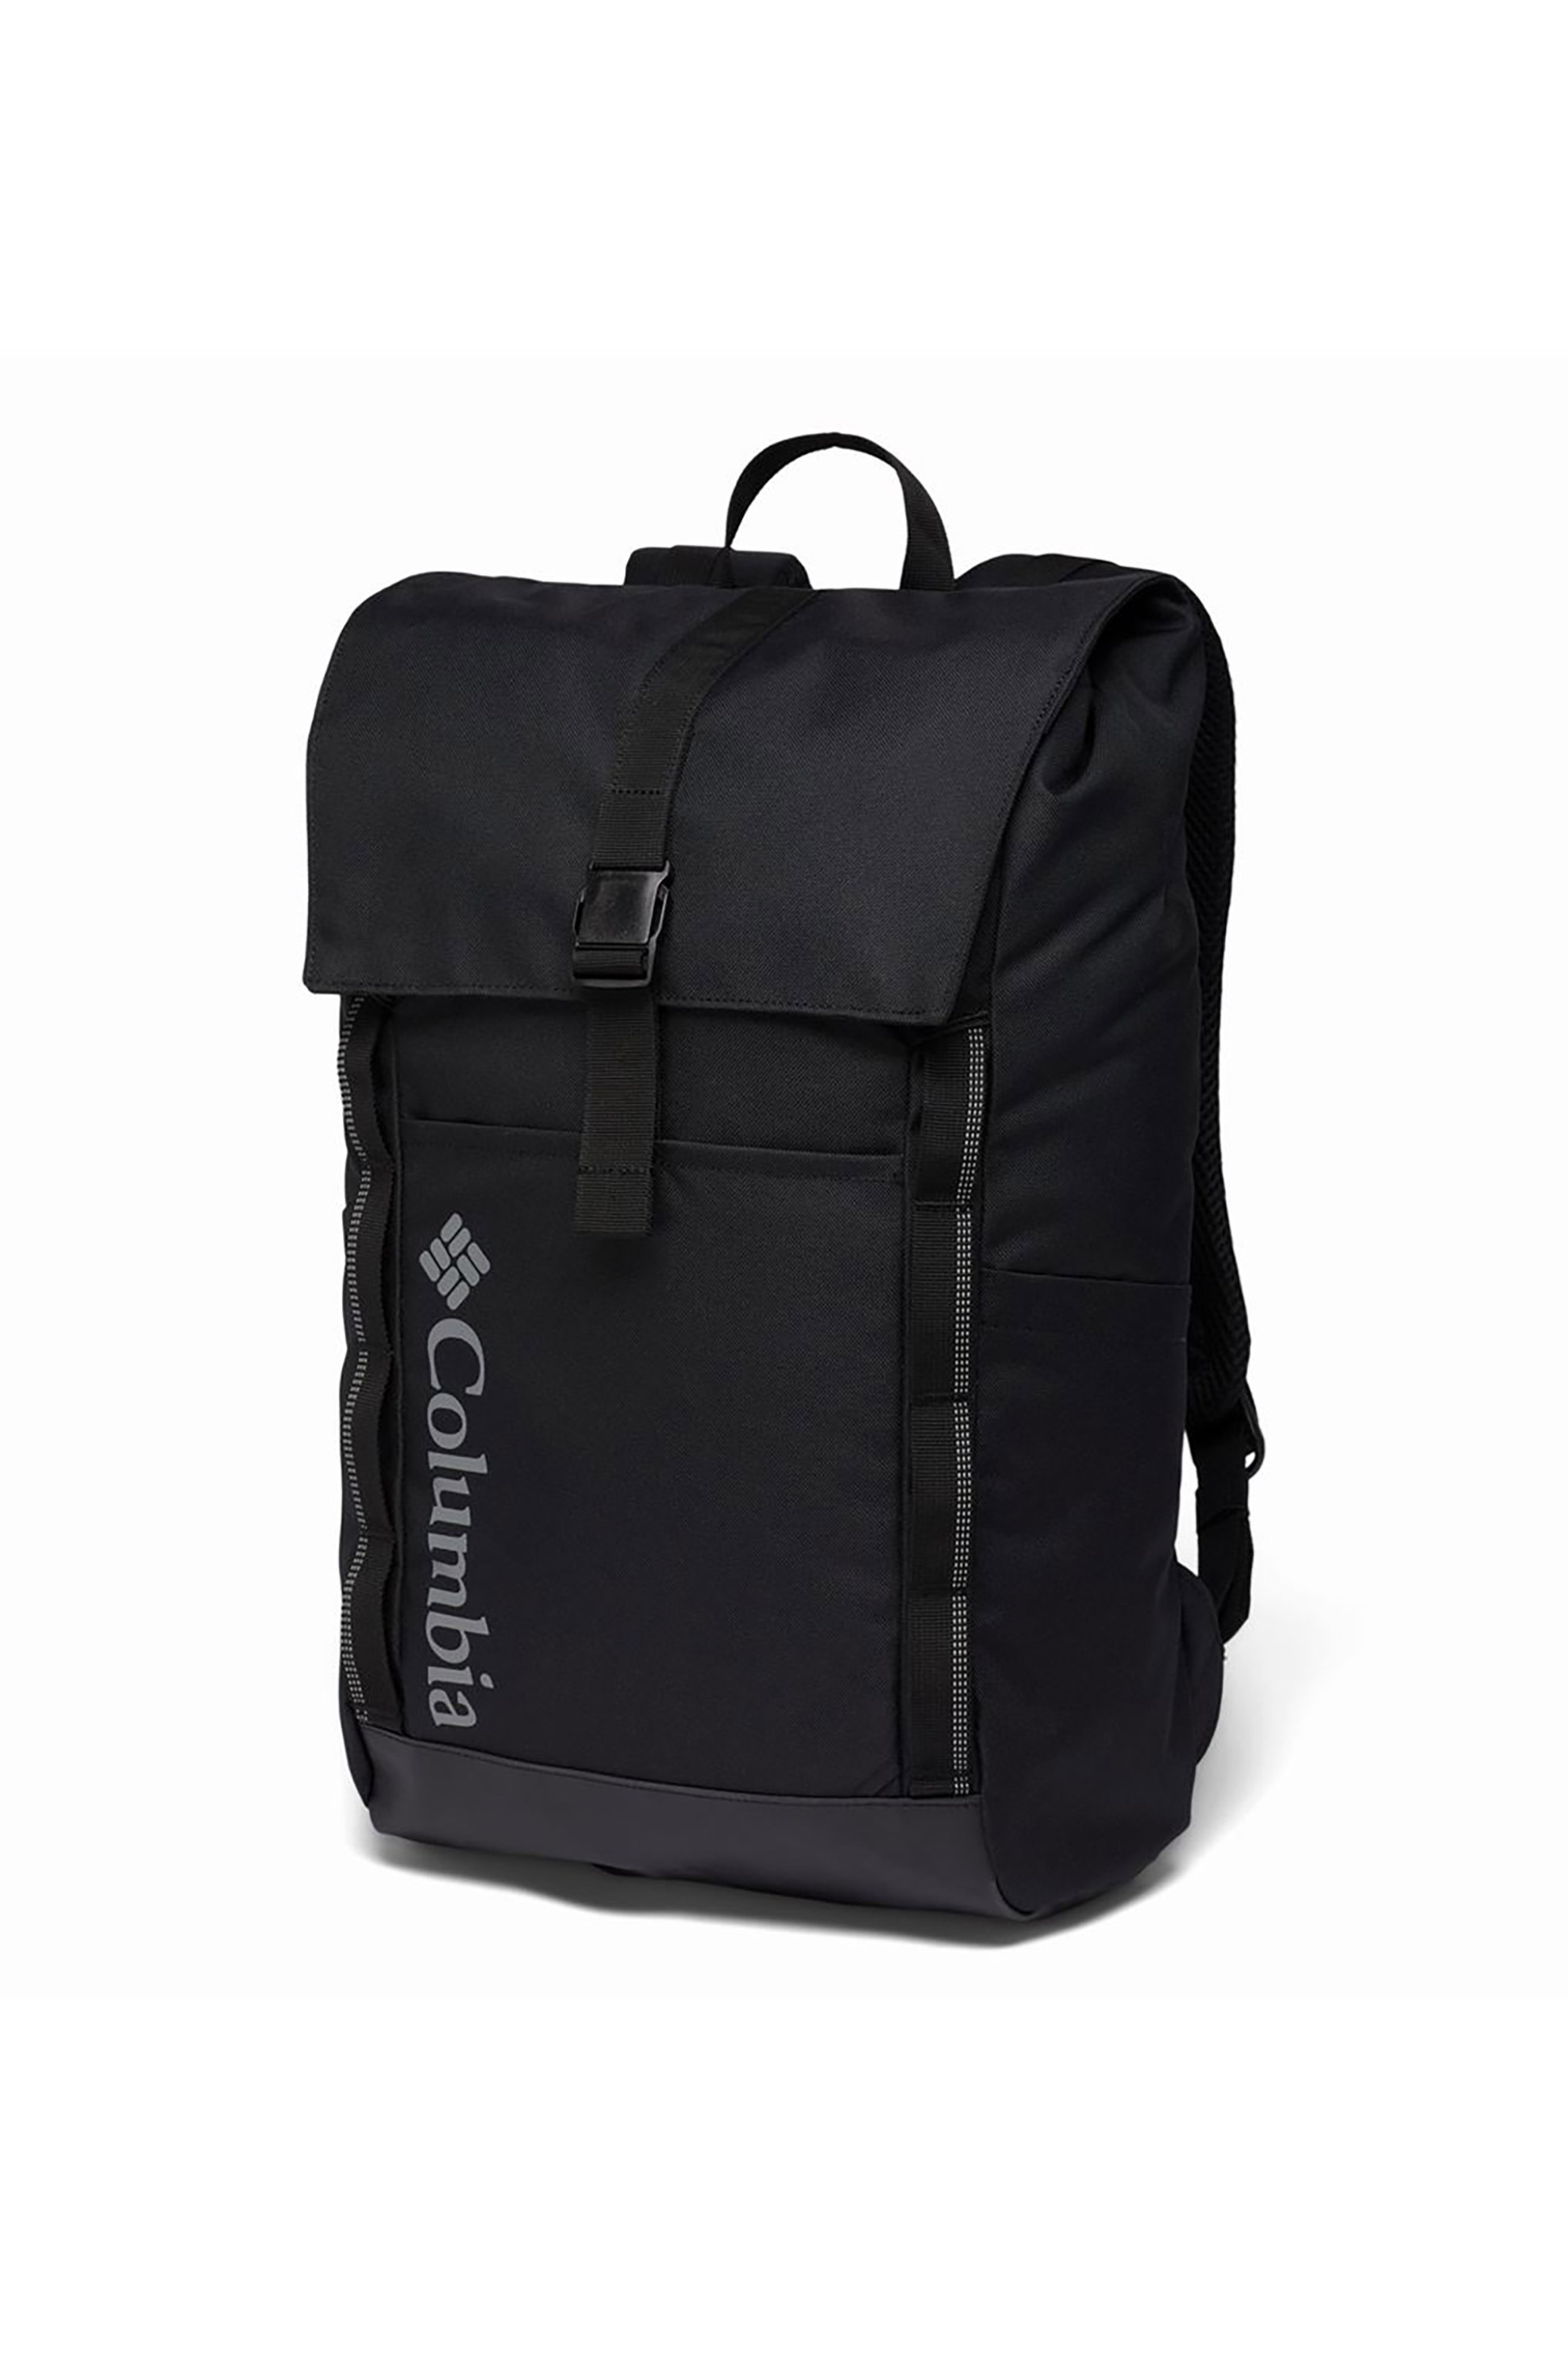 Ανδρική Μόδα > Ανδρικές Τσάντες > Ανδρικά Σακίδια & Backpacks Columbia unisex σακίδιο πλάτης με λογότυπο "Convey™ 24L" - 2011111010TEM Μαύρο